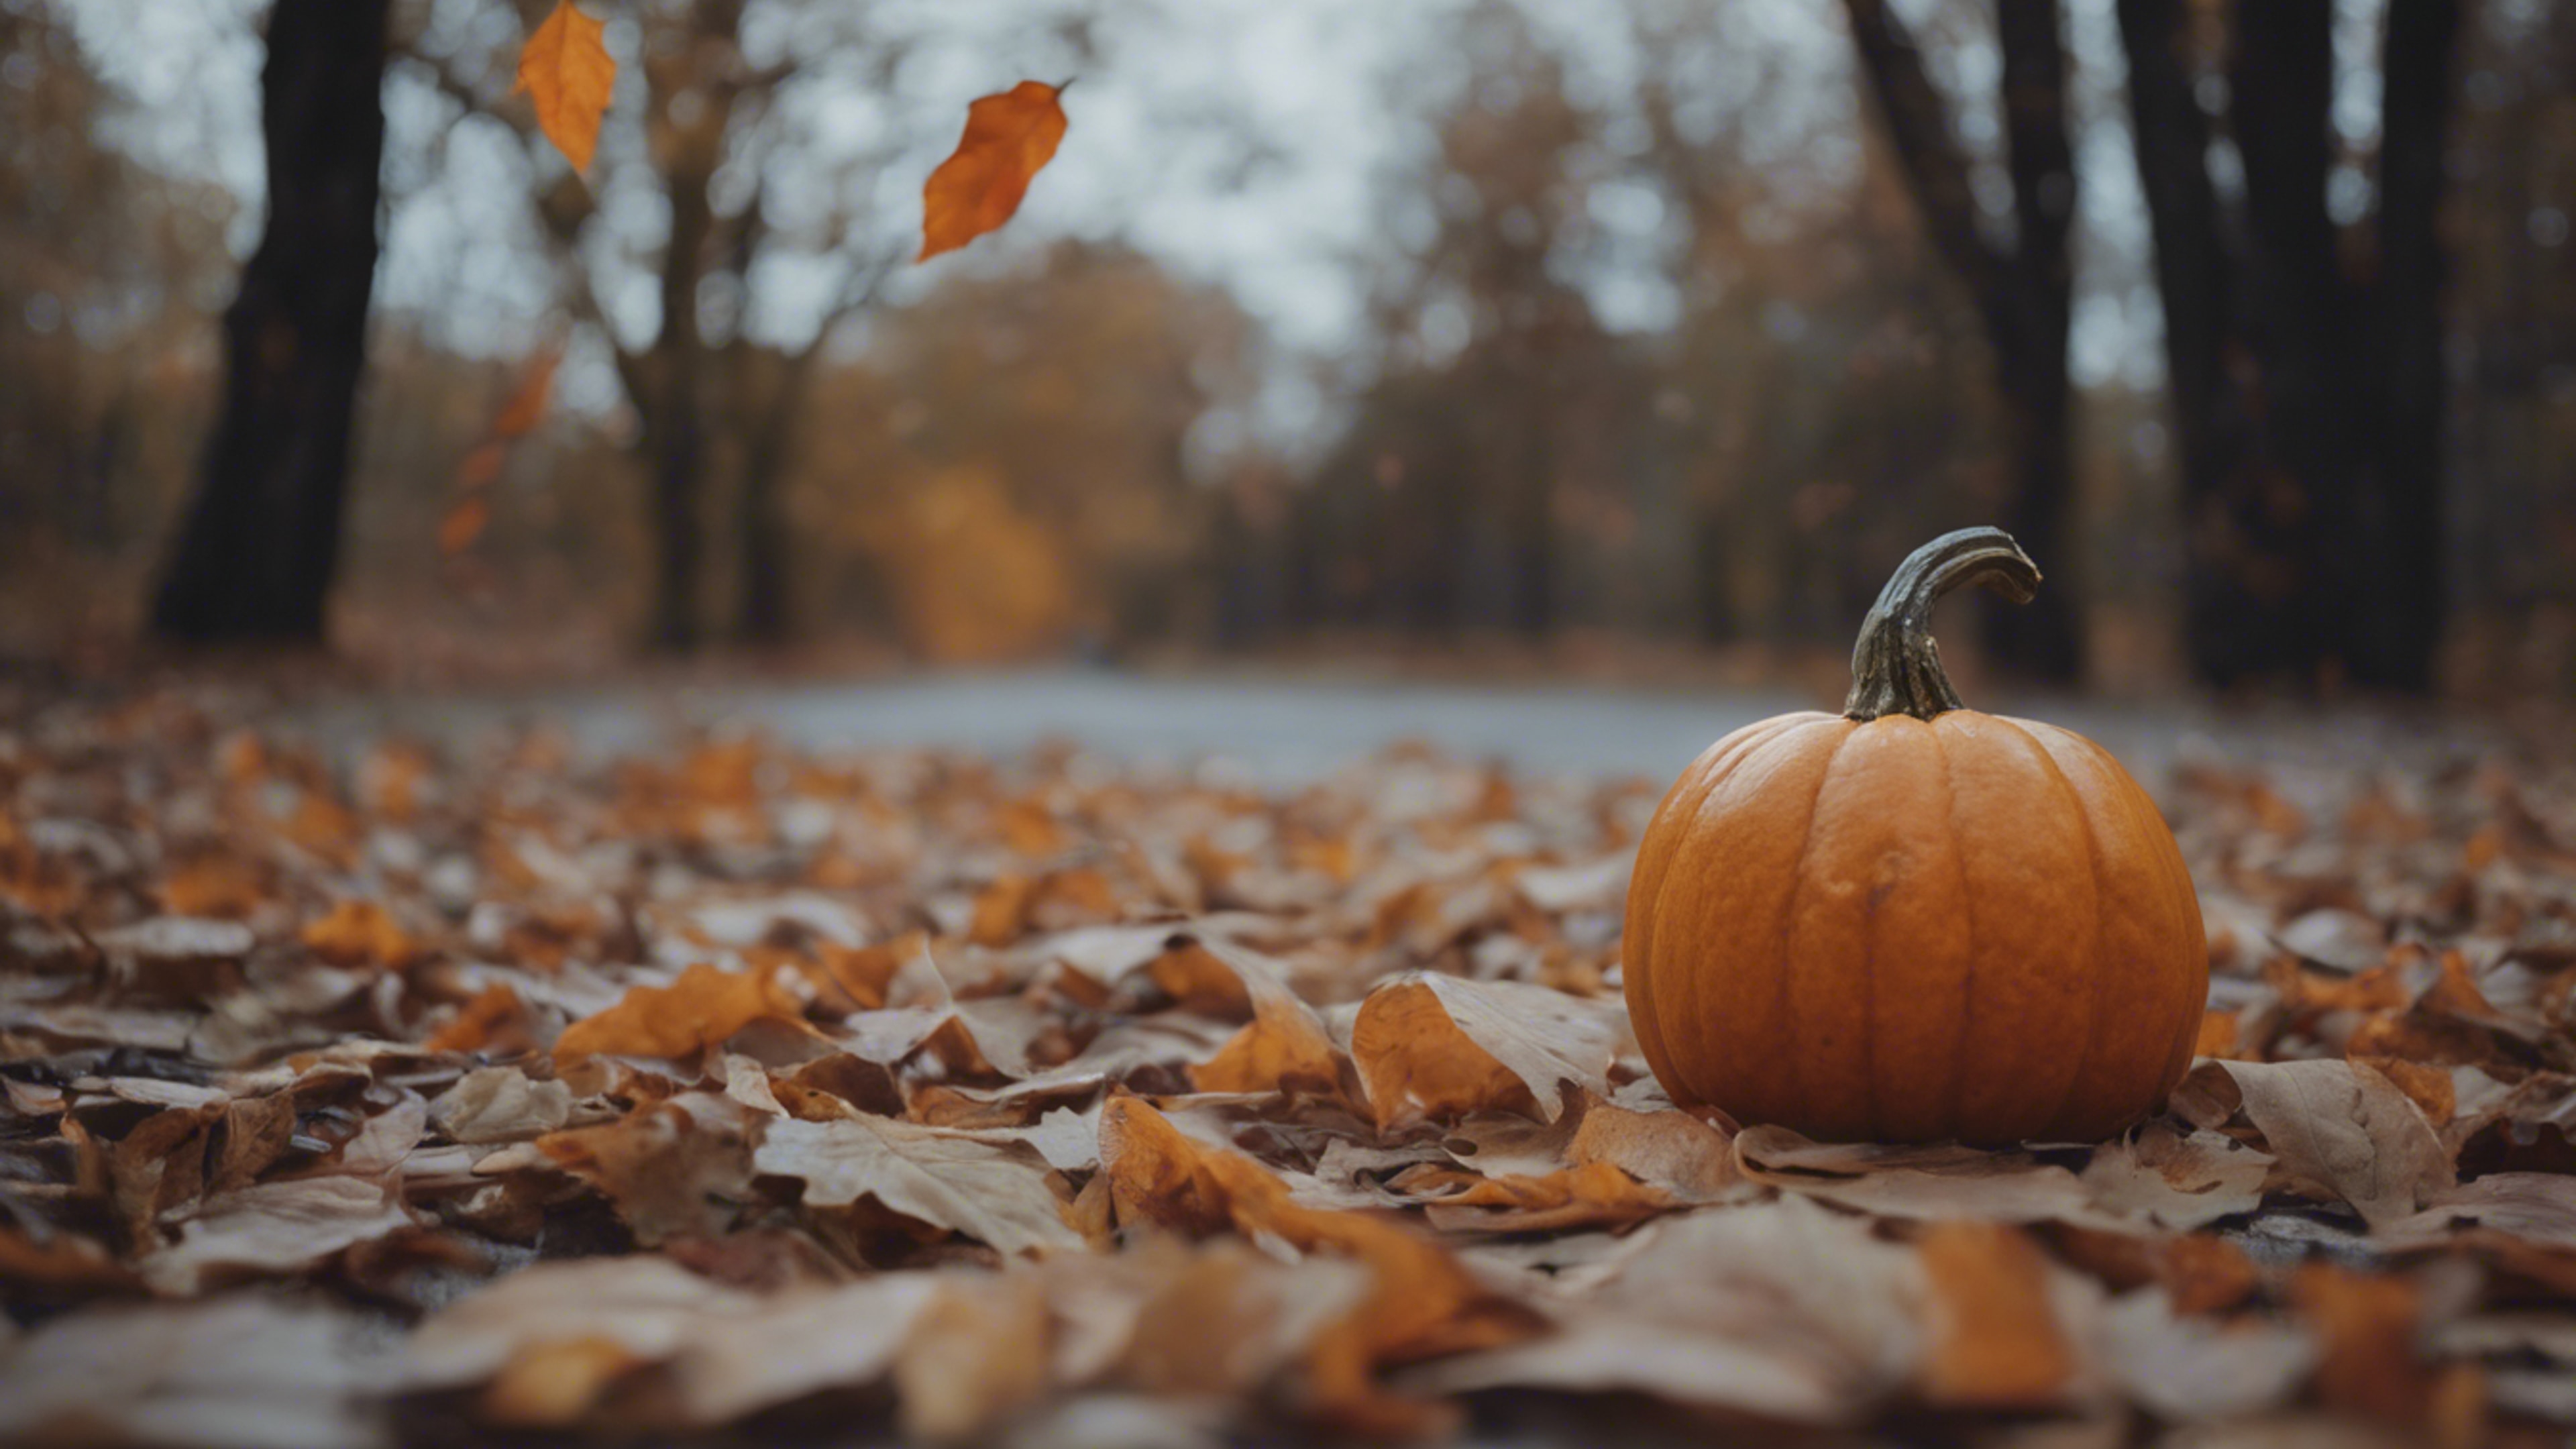 The melancholic sight of a lone squashed pumpkin left behind after a autumn festival. Papel de parede[c2269625c3c64c378d01]